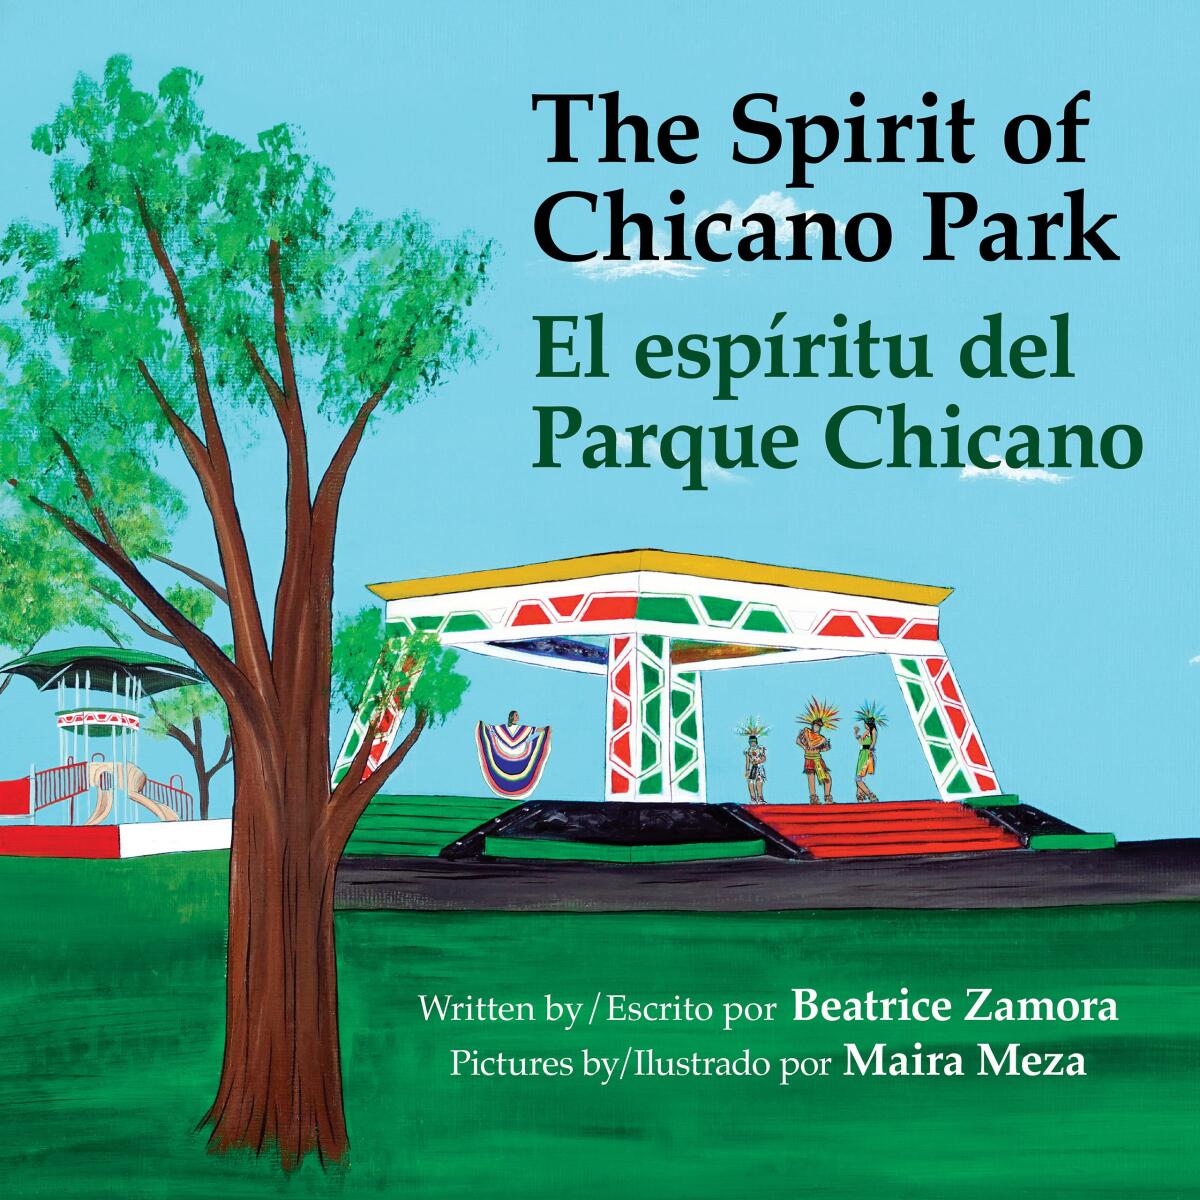 Beatrice Zamora's "The Spirit of Chicano Park, El espíritu del Parque Chicano" is illustrated by Maira Meza.